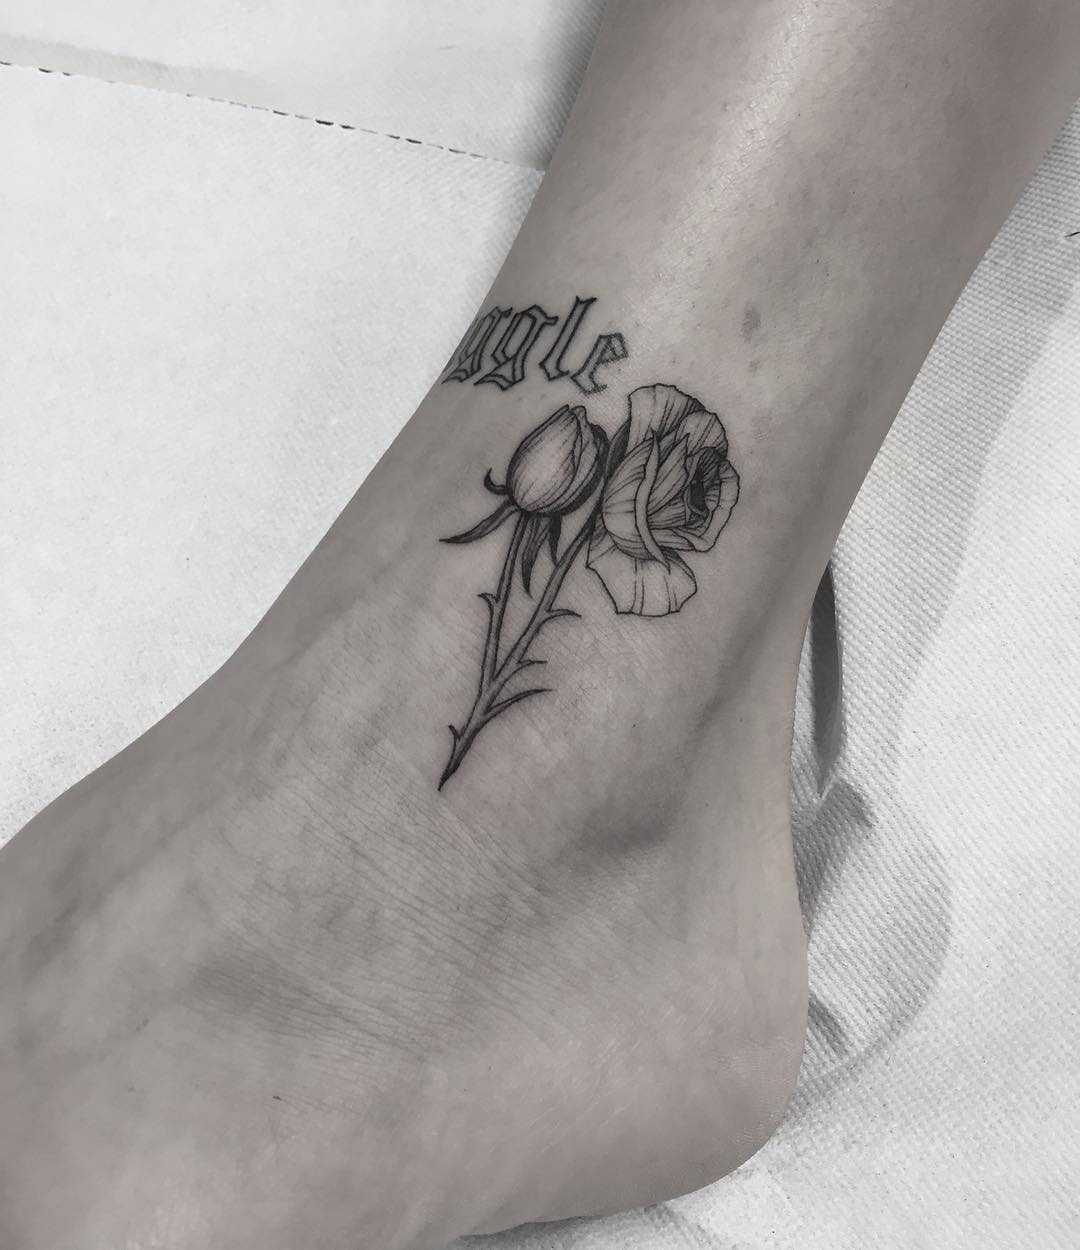 Minimalist rose tattoo on the ankle